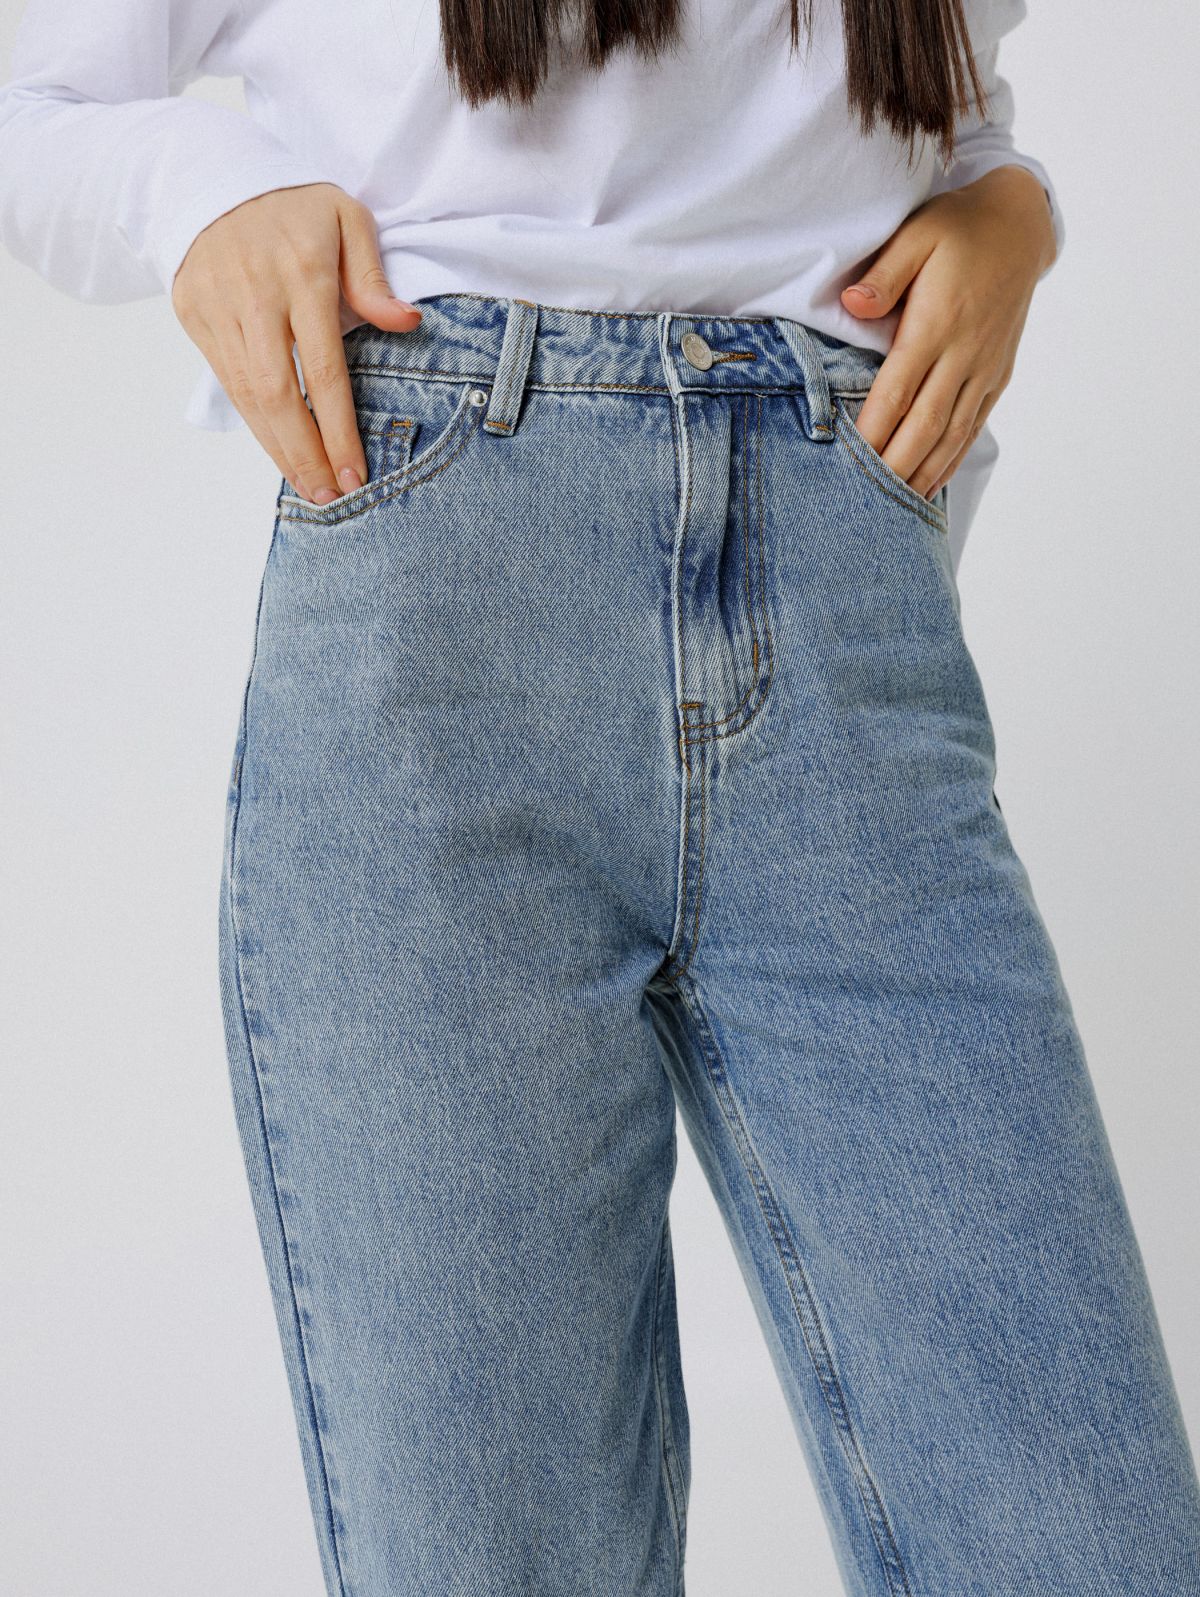  ג'ינס בגזרת mom של TERMINAL X